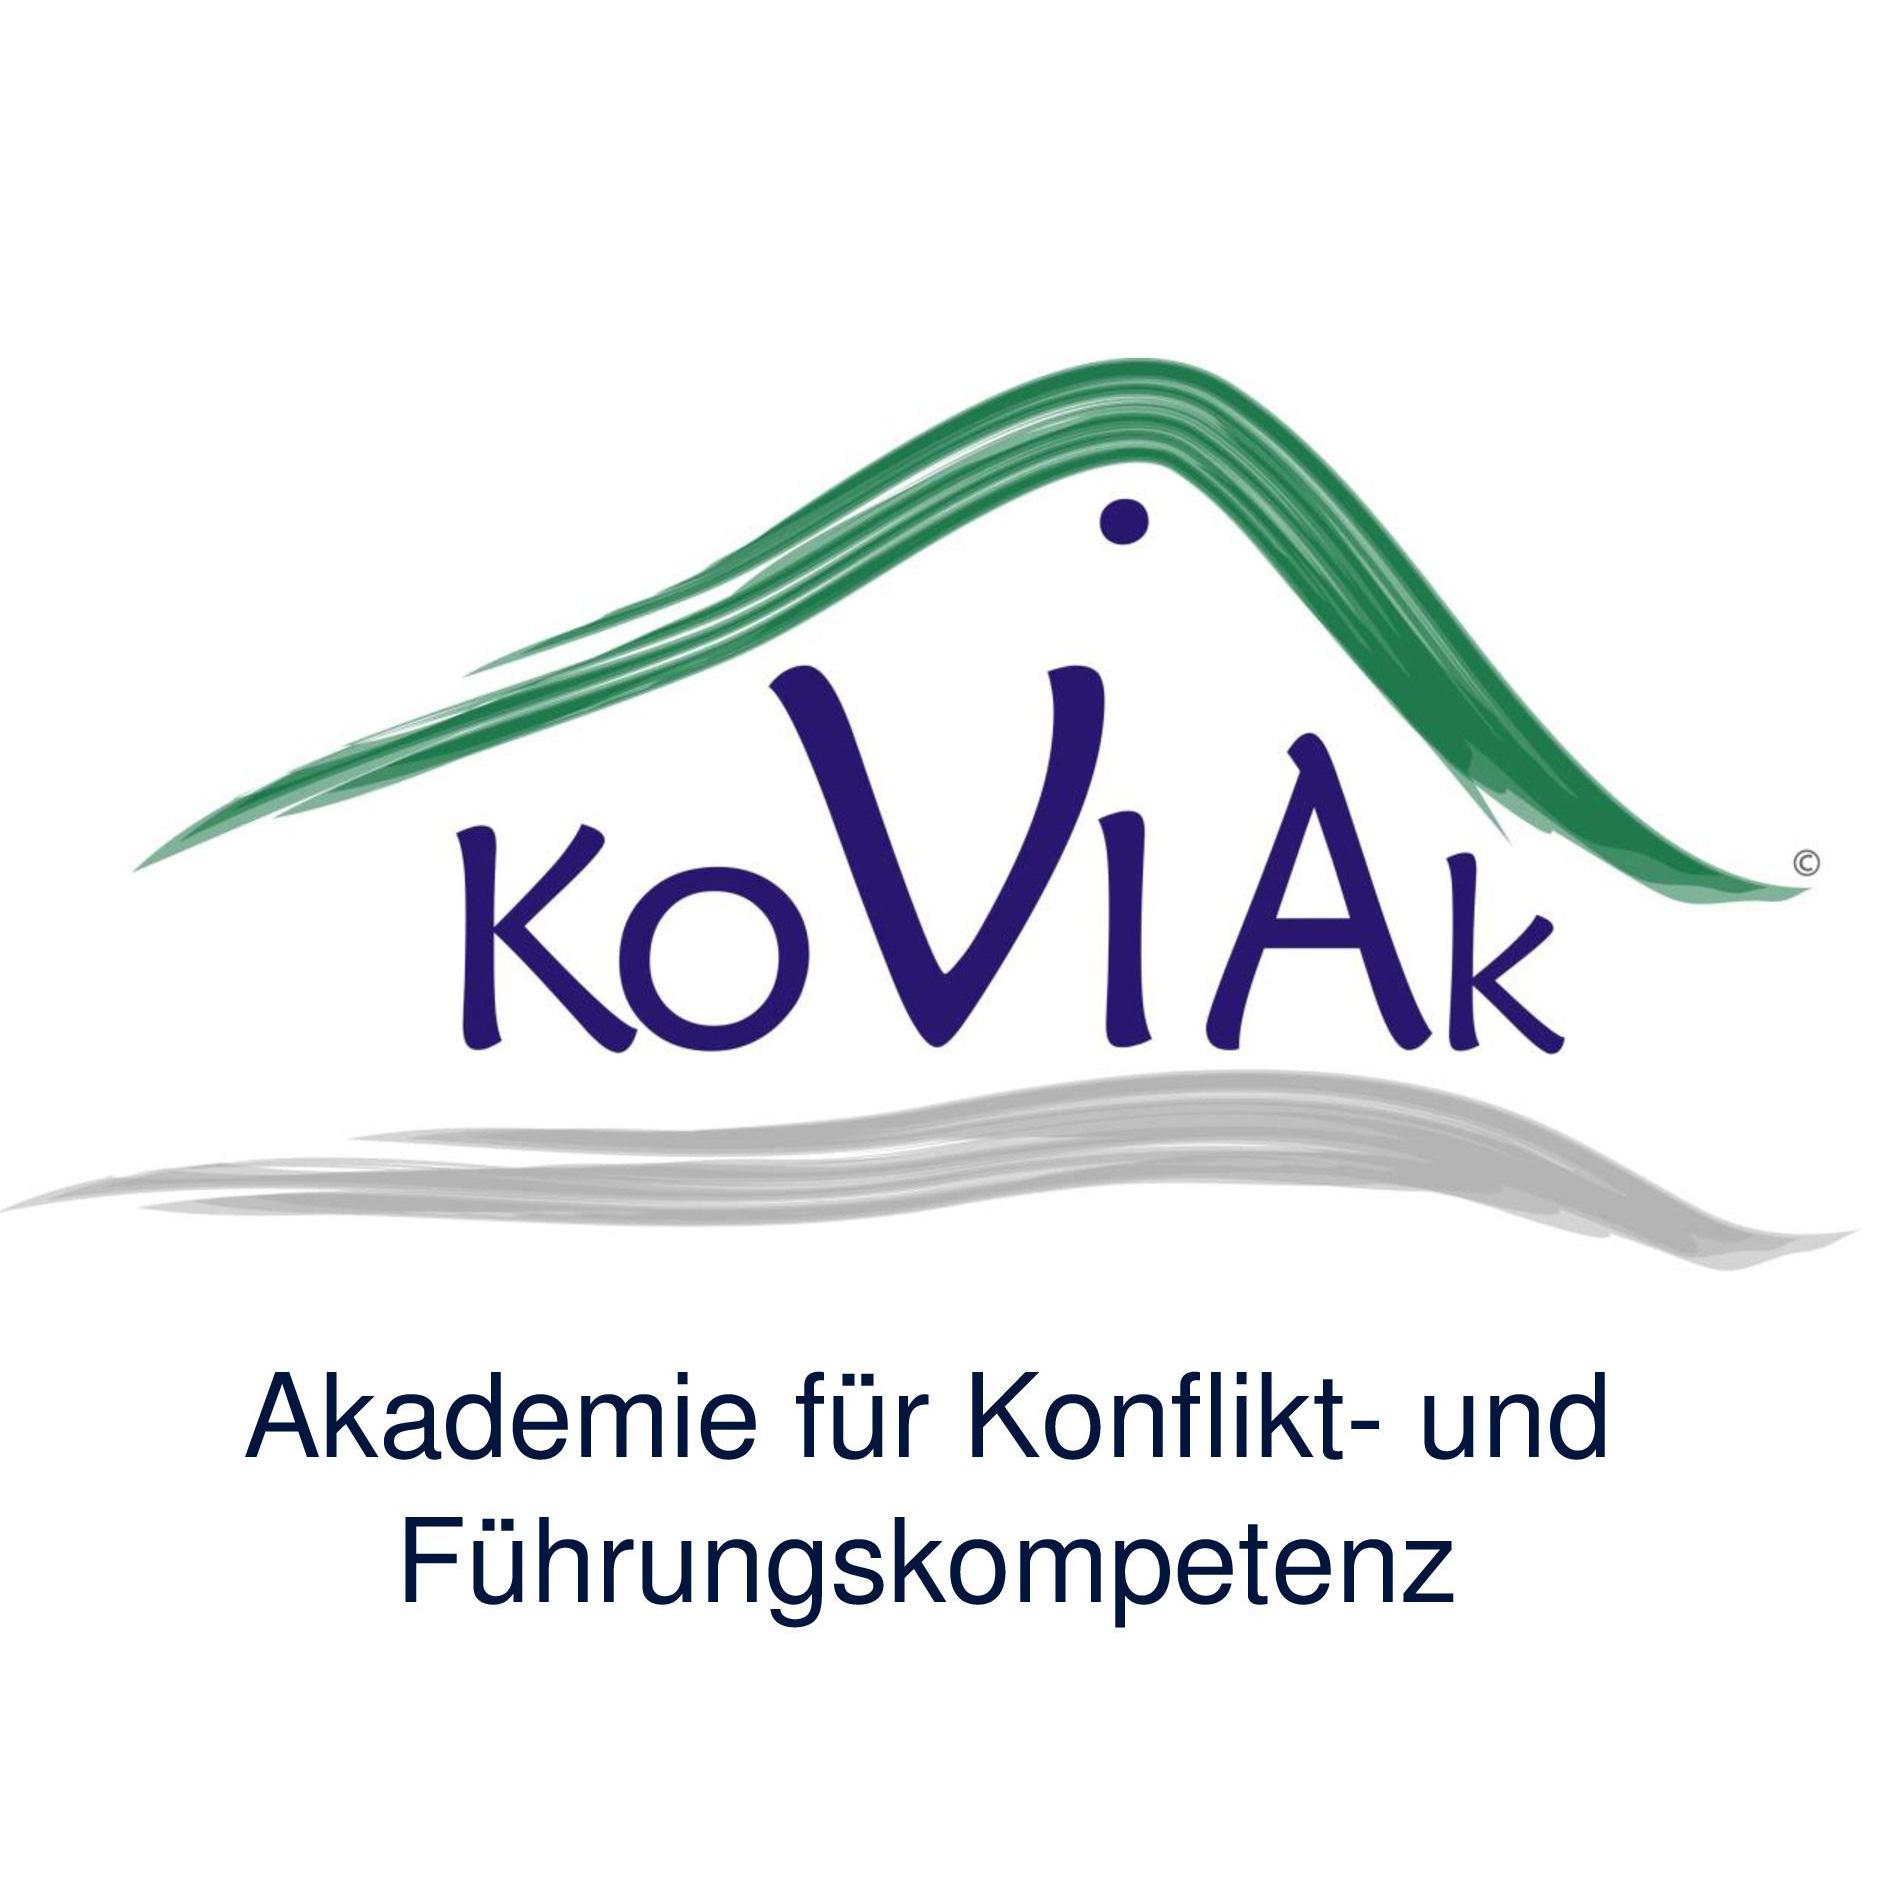 KoViAk Akademie Logo